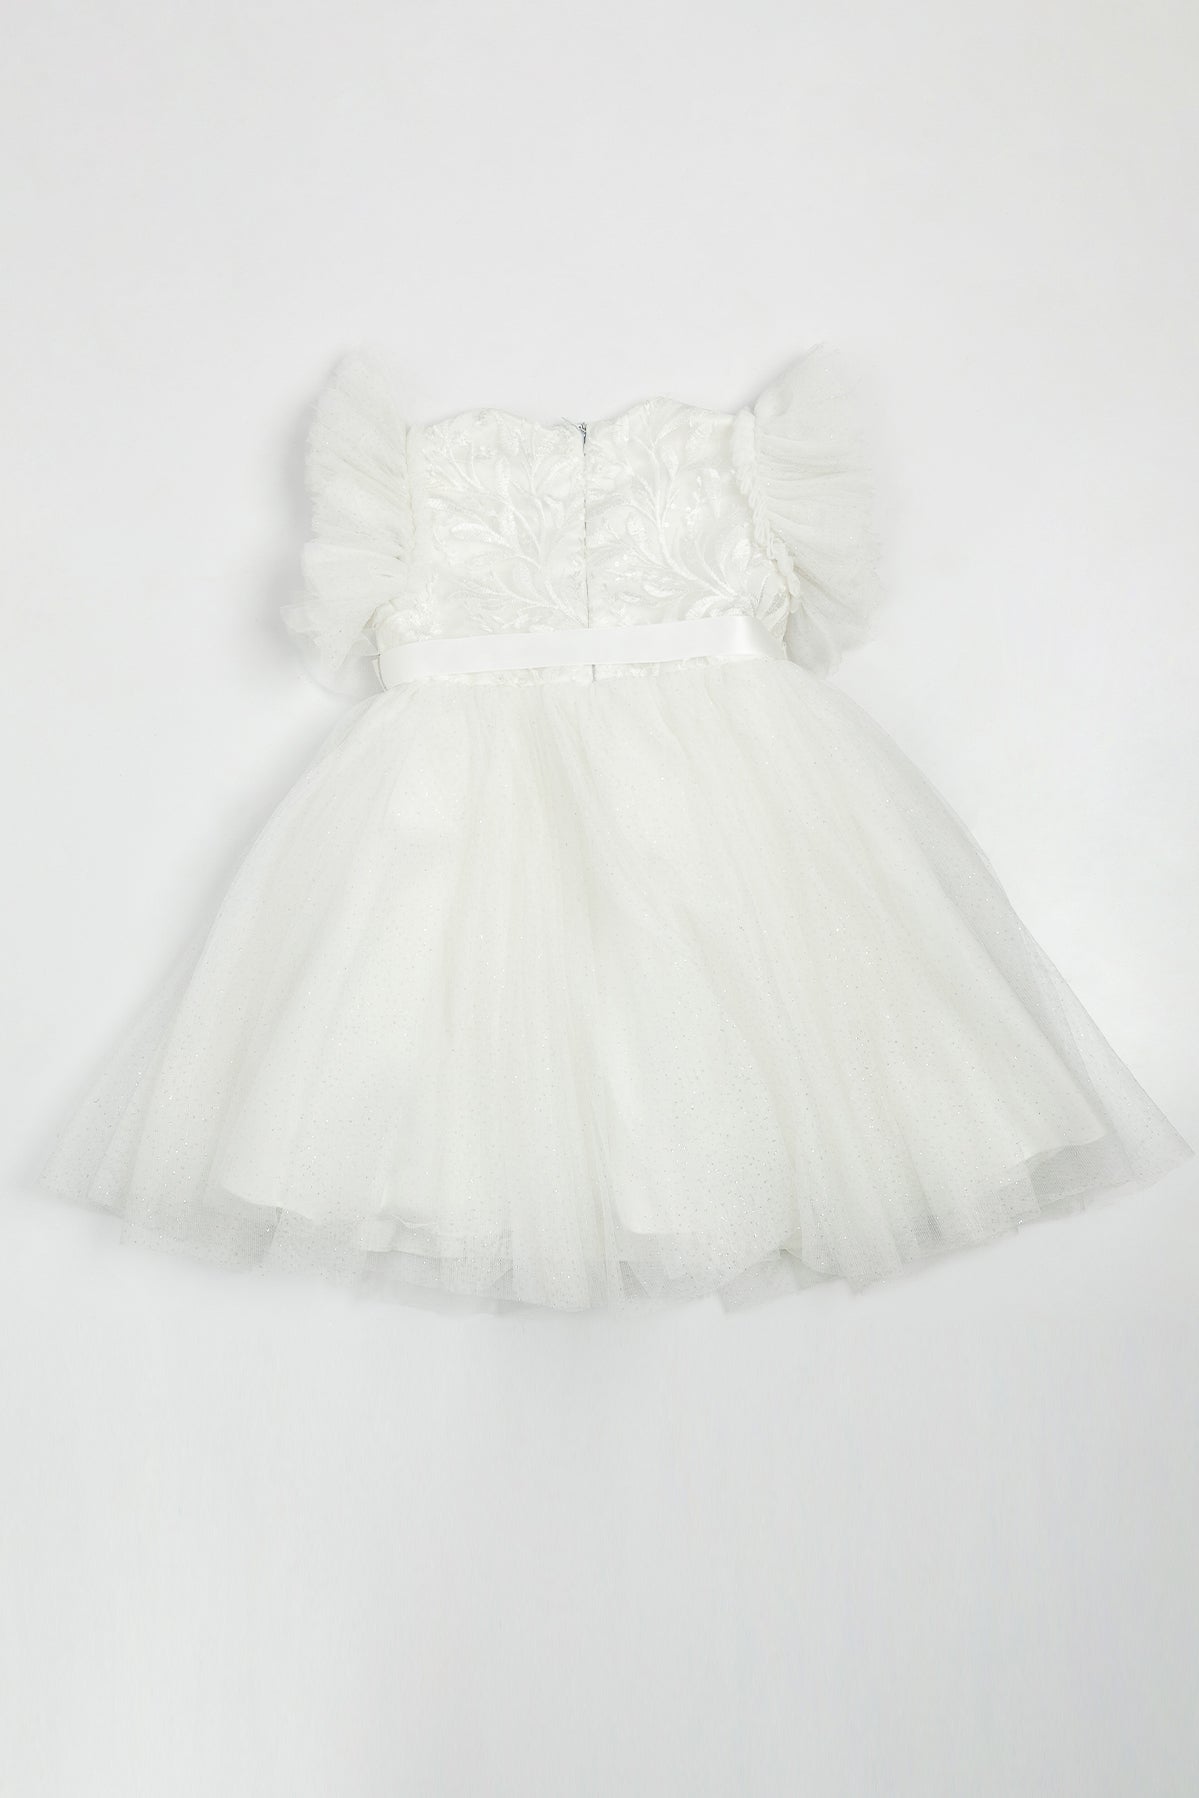 Mia Dress in White